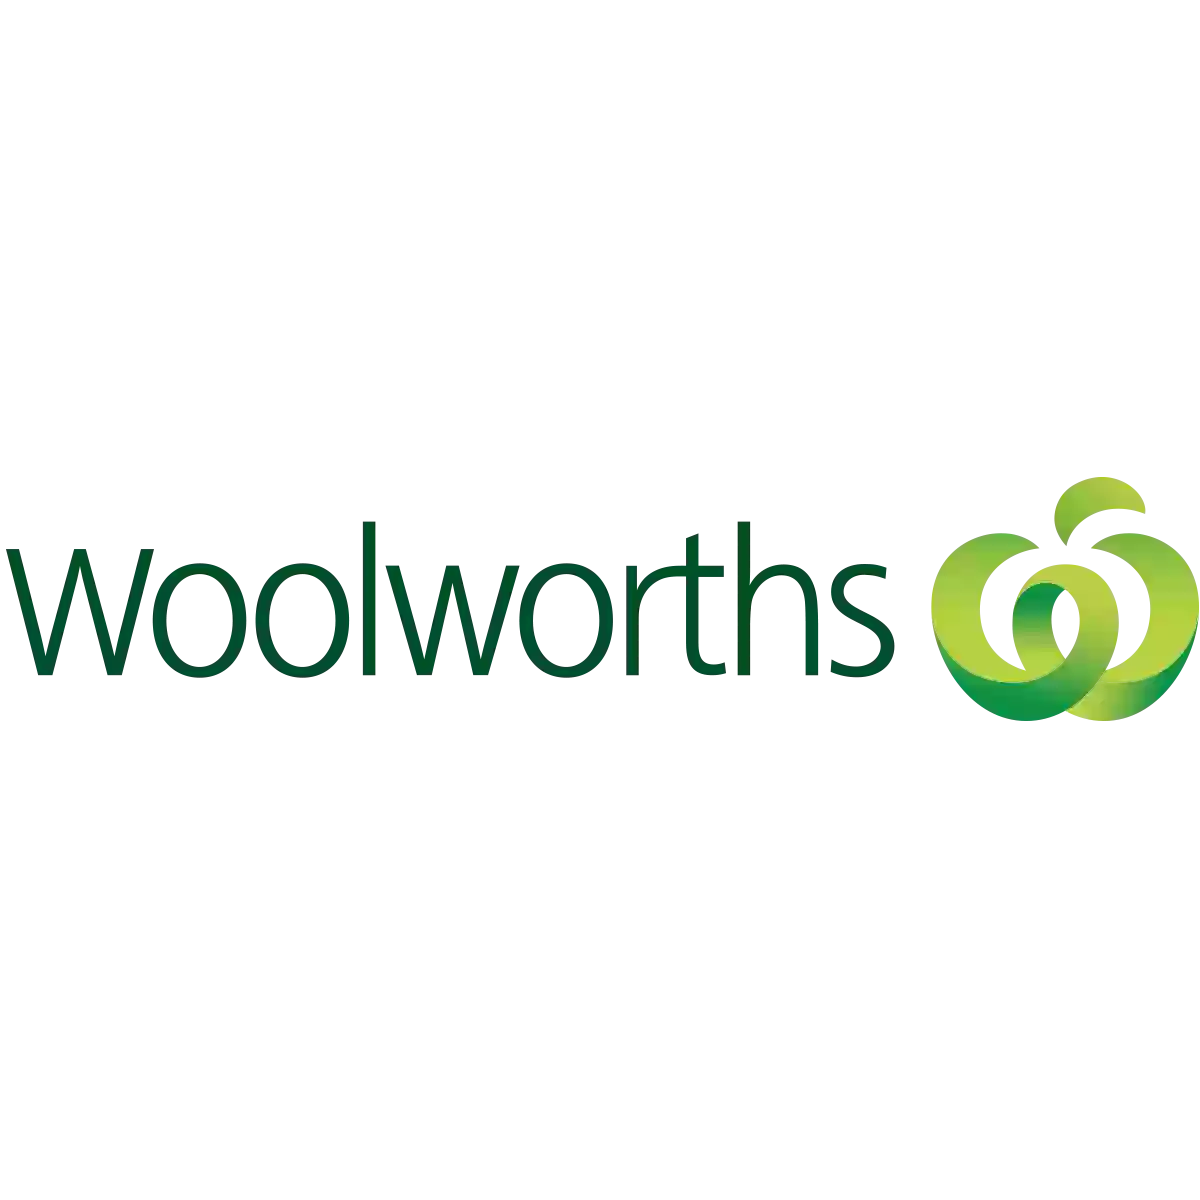 Woolworths Mt Annan